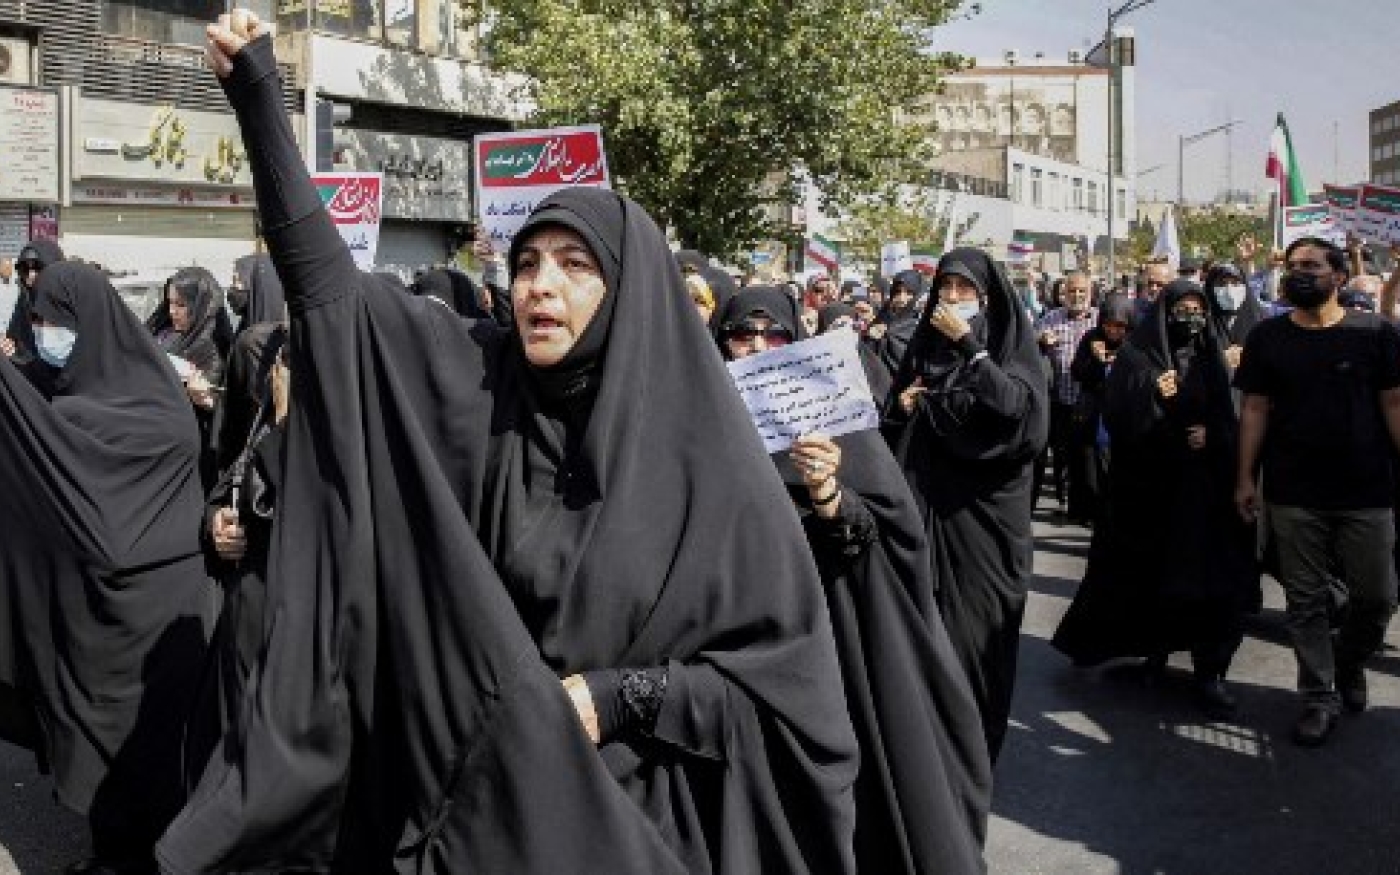 Des femmes et des hommes chantent des slogans lors d’un rassemblement pro-hijab dans la capitale iranienne Téhéran le 23 septembre 2022 (AFP)